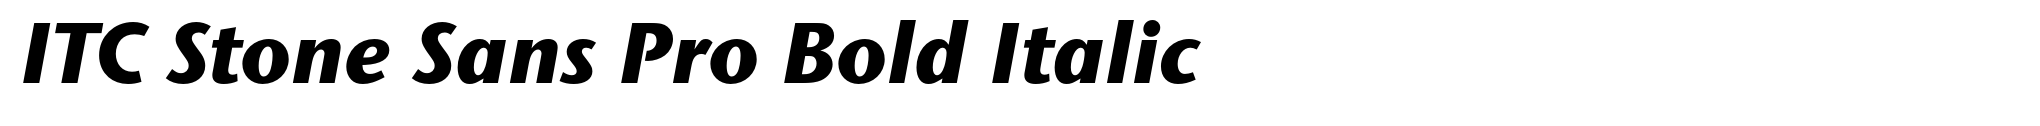 ITC Stone Sans Pro Bold Italic image